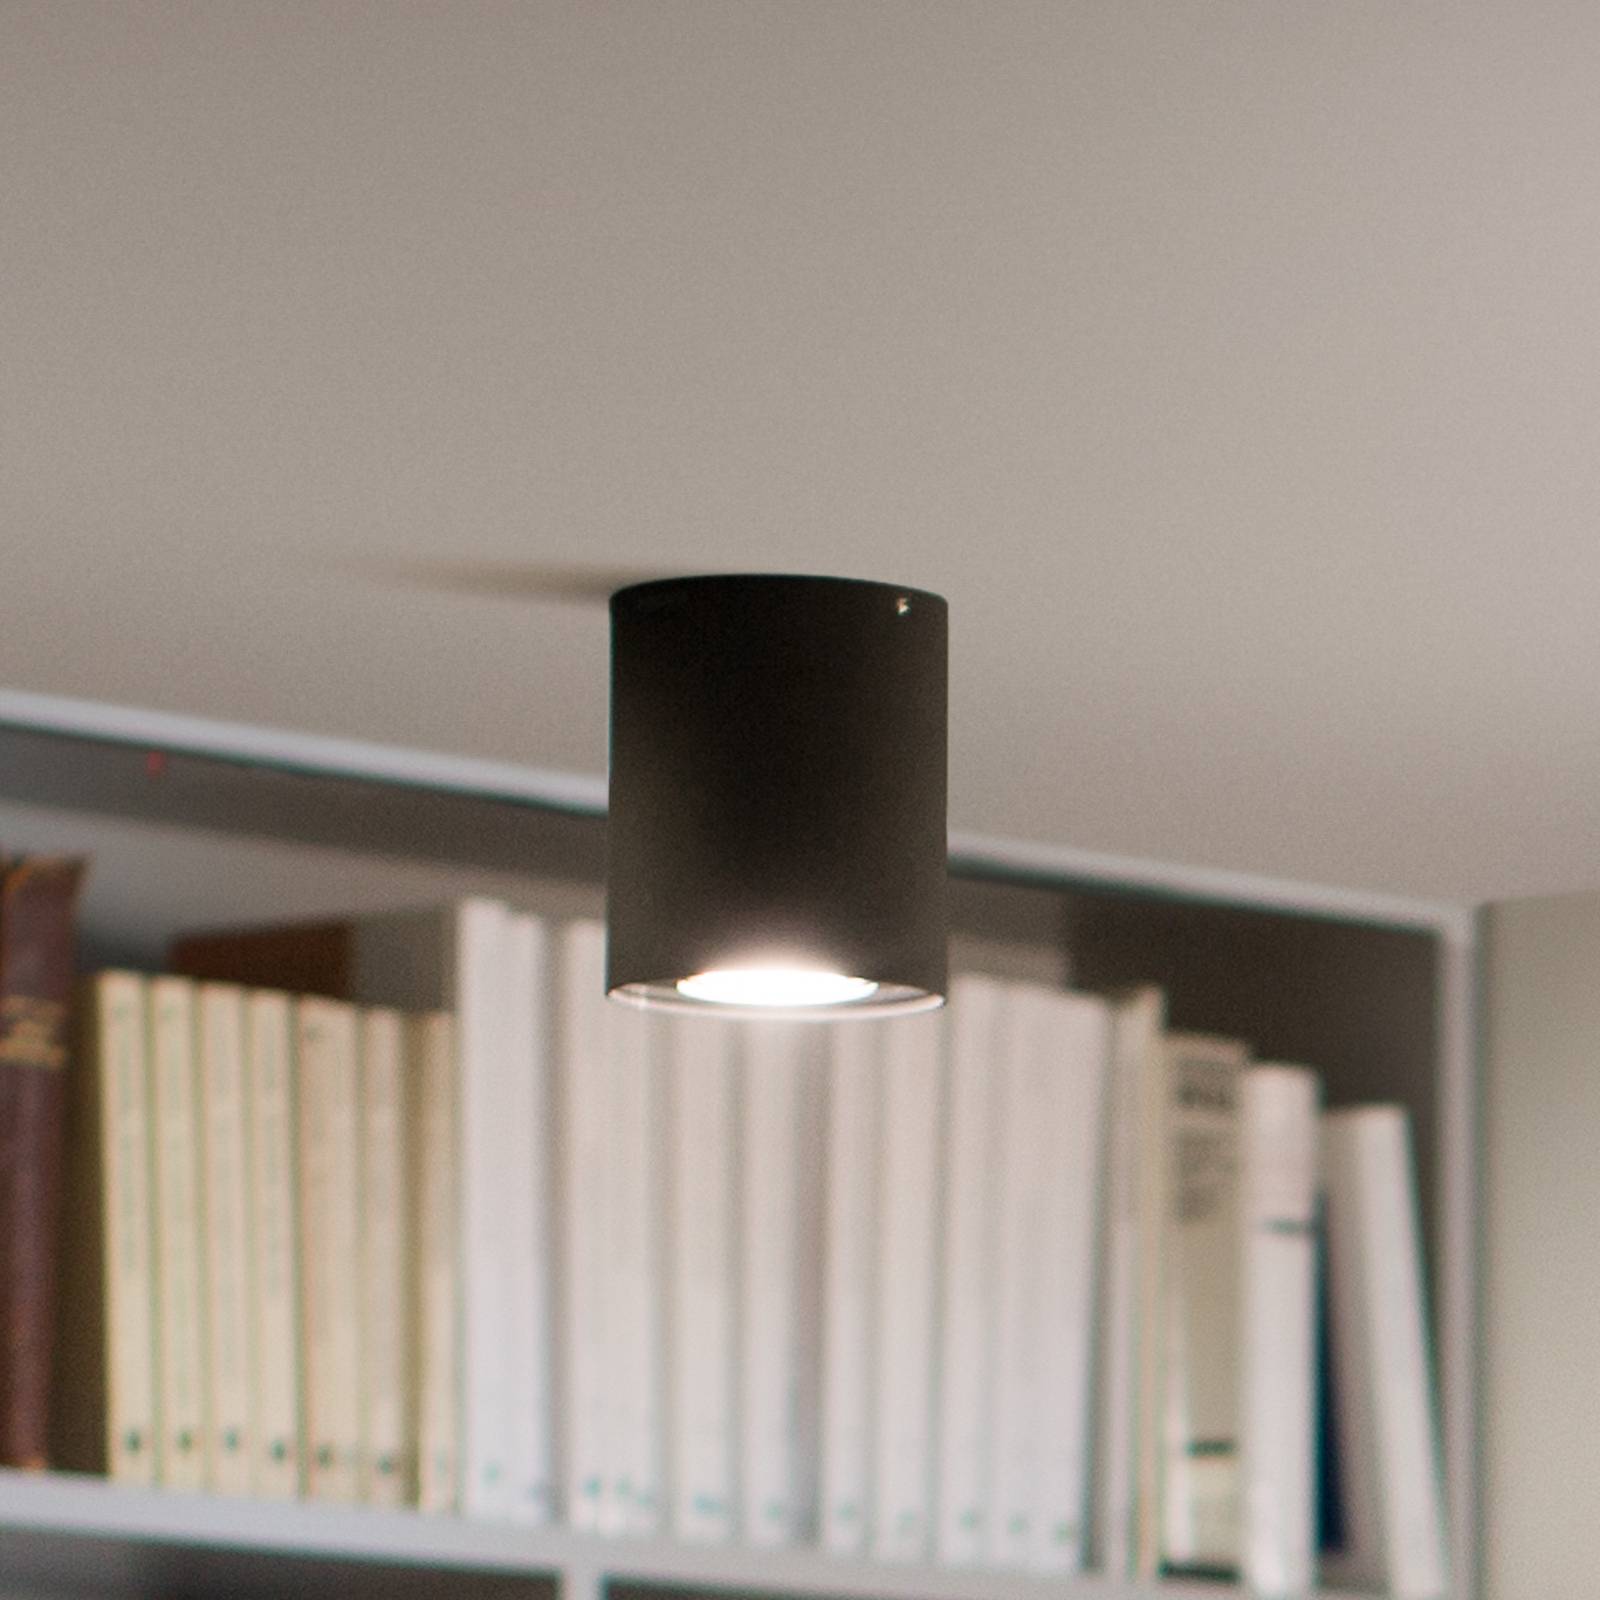 Philips Hue Pillar bodová LED stmievač, čierna